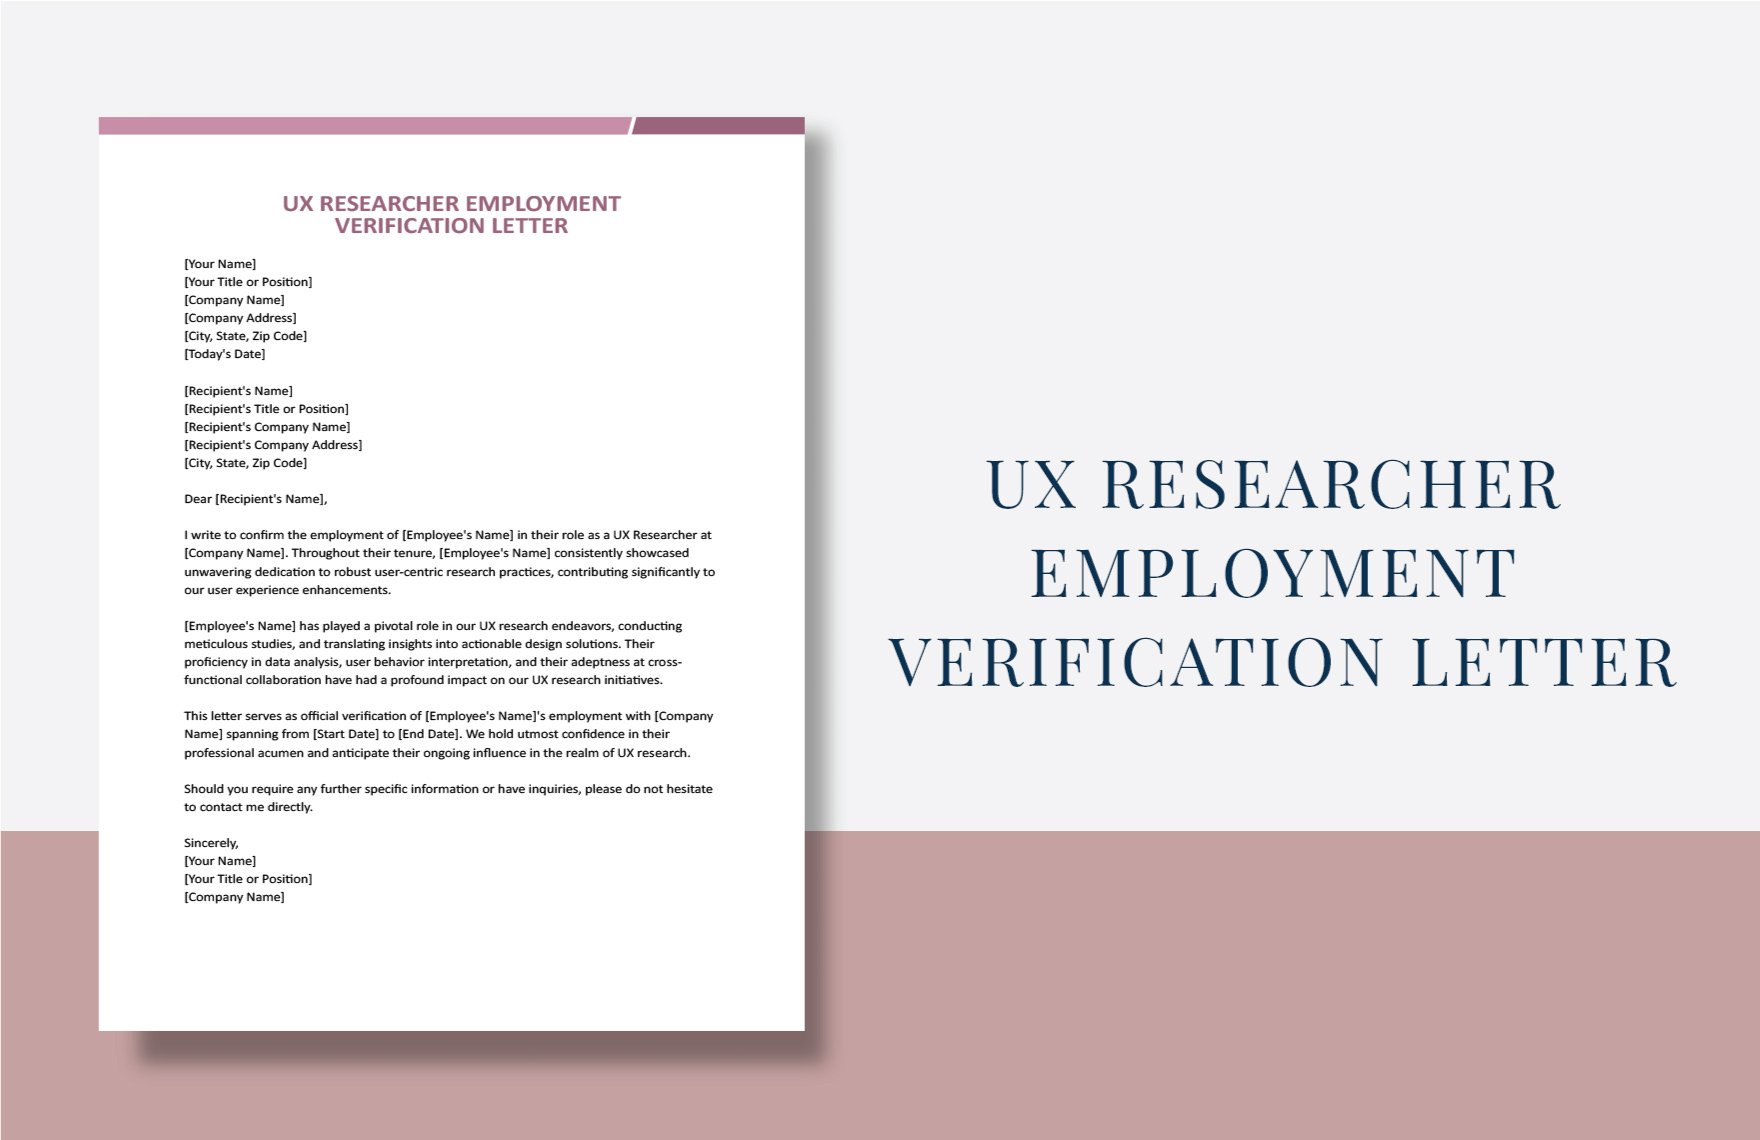 Free UX Researcher Employment Verification Letter